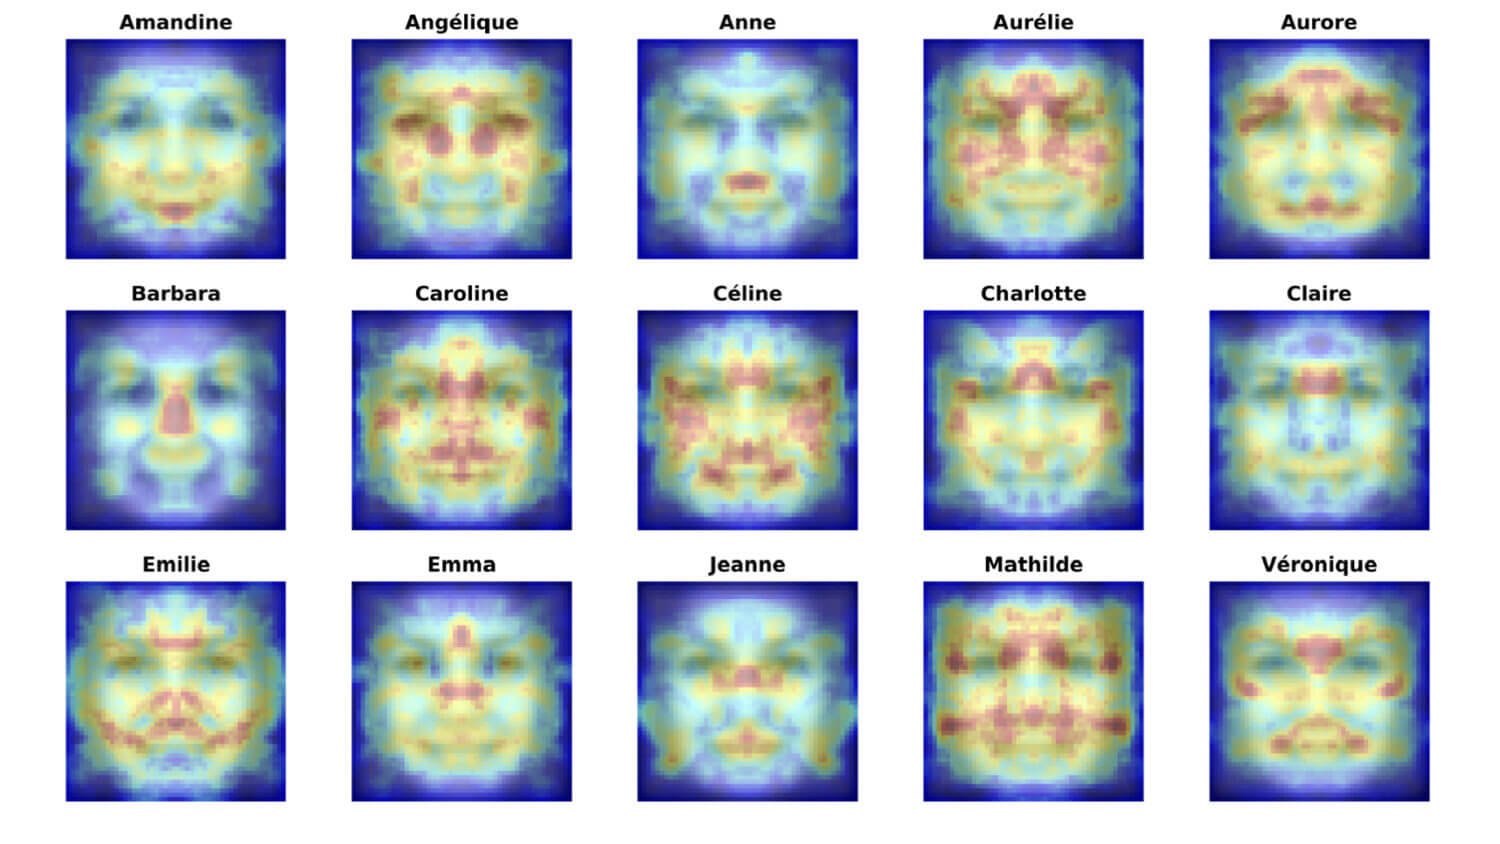 Почему имя – это отражение лица? Компьютерный анализ показал, что люди с одинаковыми именами с большей вероятностью имели схожее выражение вокруг глаз и рта — областей лица, которые легче поддаются коррекции. Изображение: wamu.org. Фото.